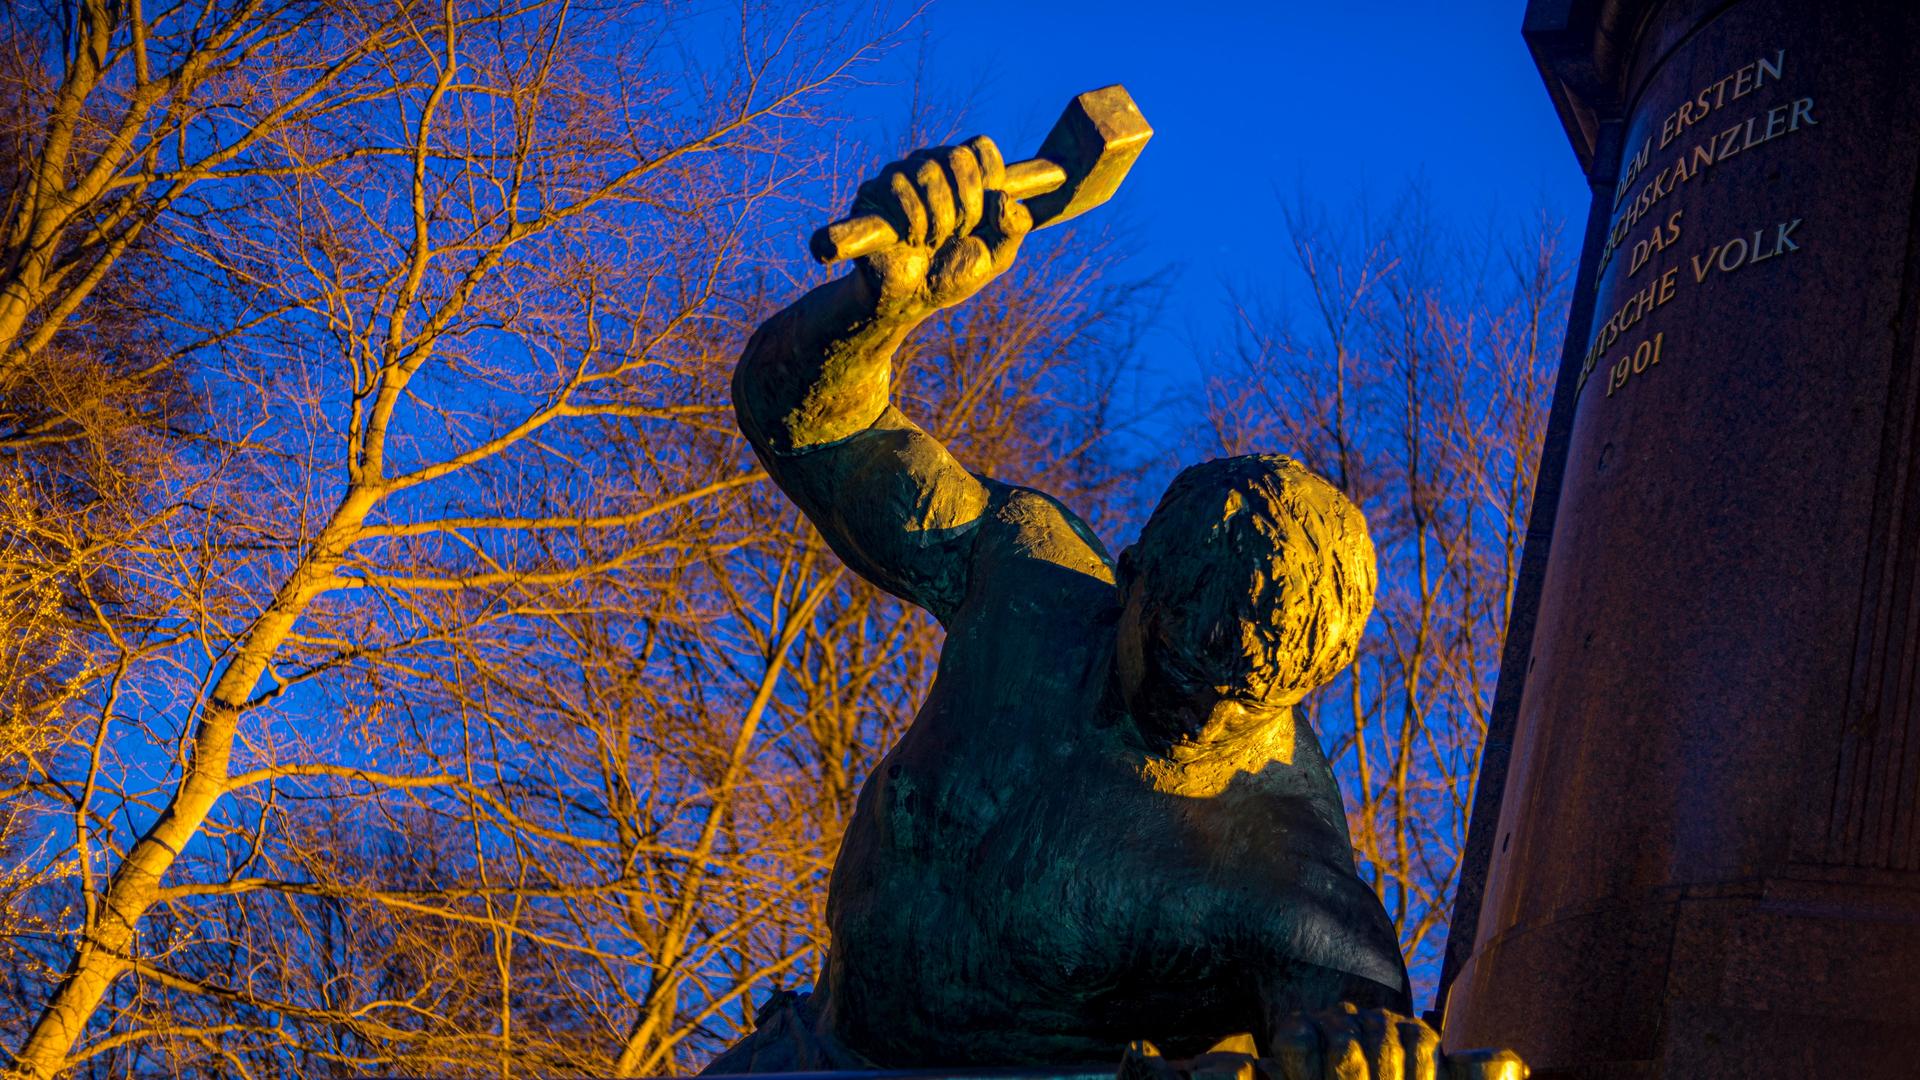 Siegfried schmiedet das Schwert bei dieser Statue zu Ehren des ersten Reichskanzlers Otto von Bismarck in Berlin.